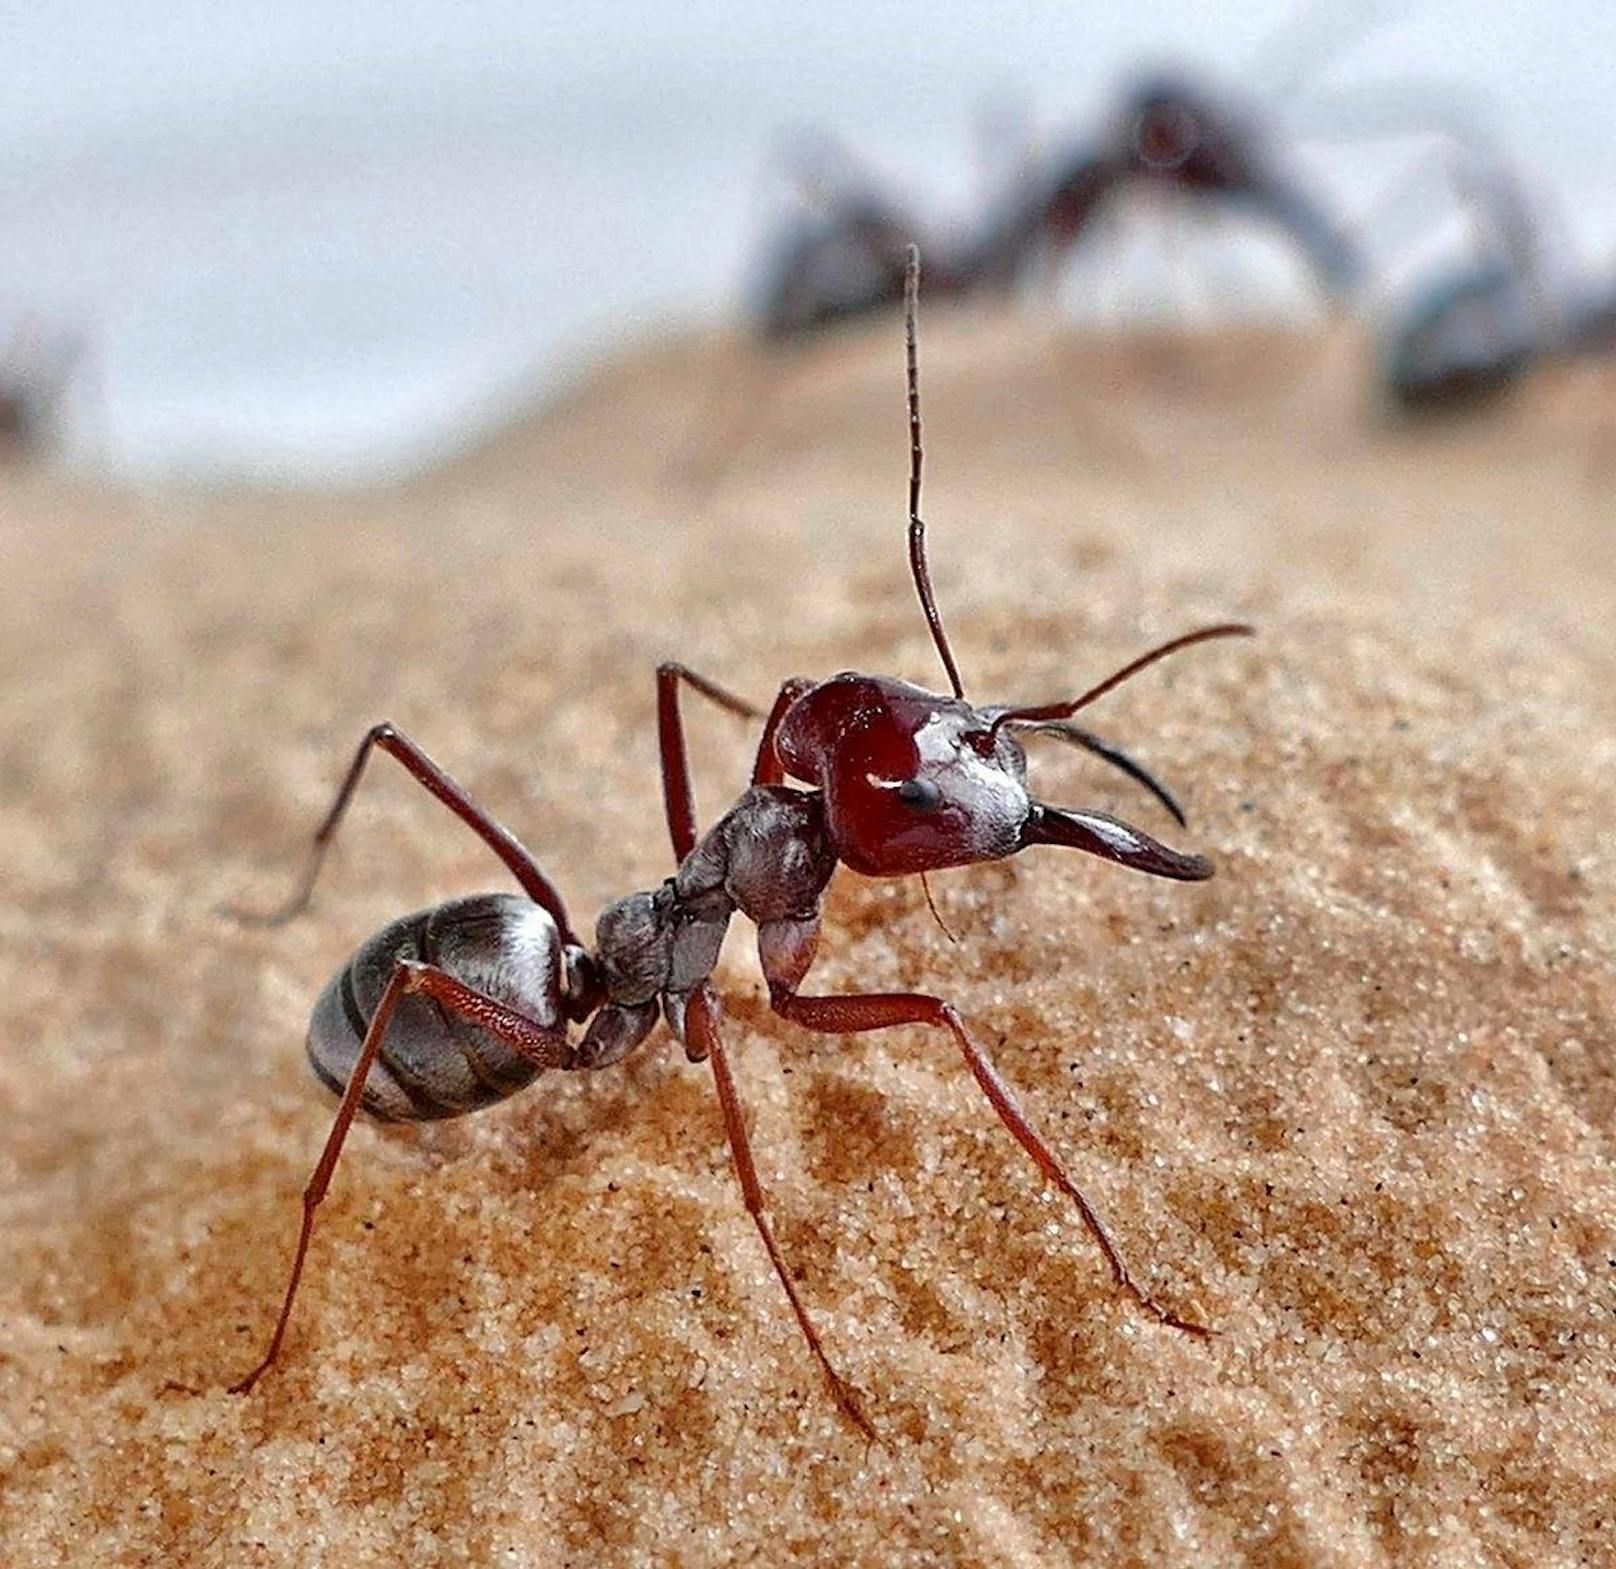 Die Silberameise (Cataglyphis bombycina) gilt als schnellste Ameise der Welt. Pro Sekunde legen sie 108 Mal die eigene Körperlänge zurück.